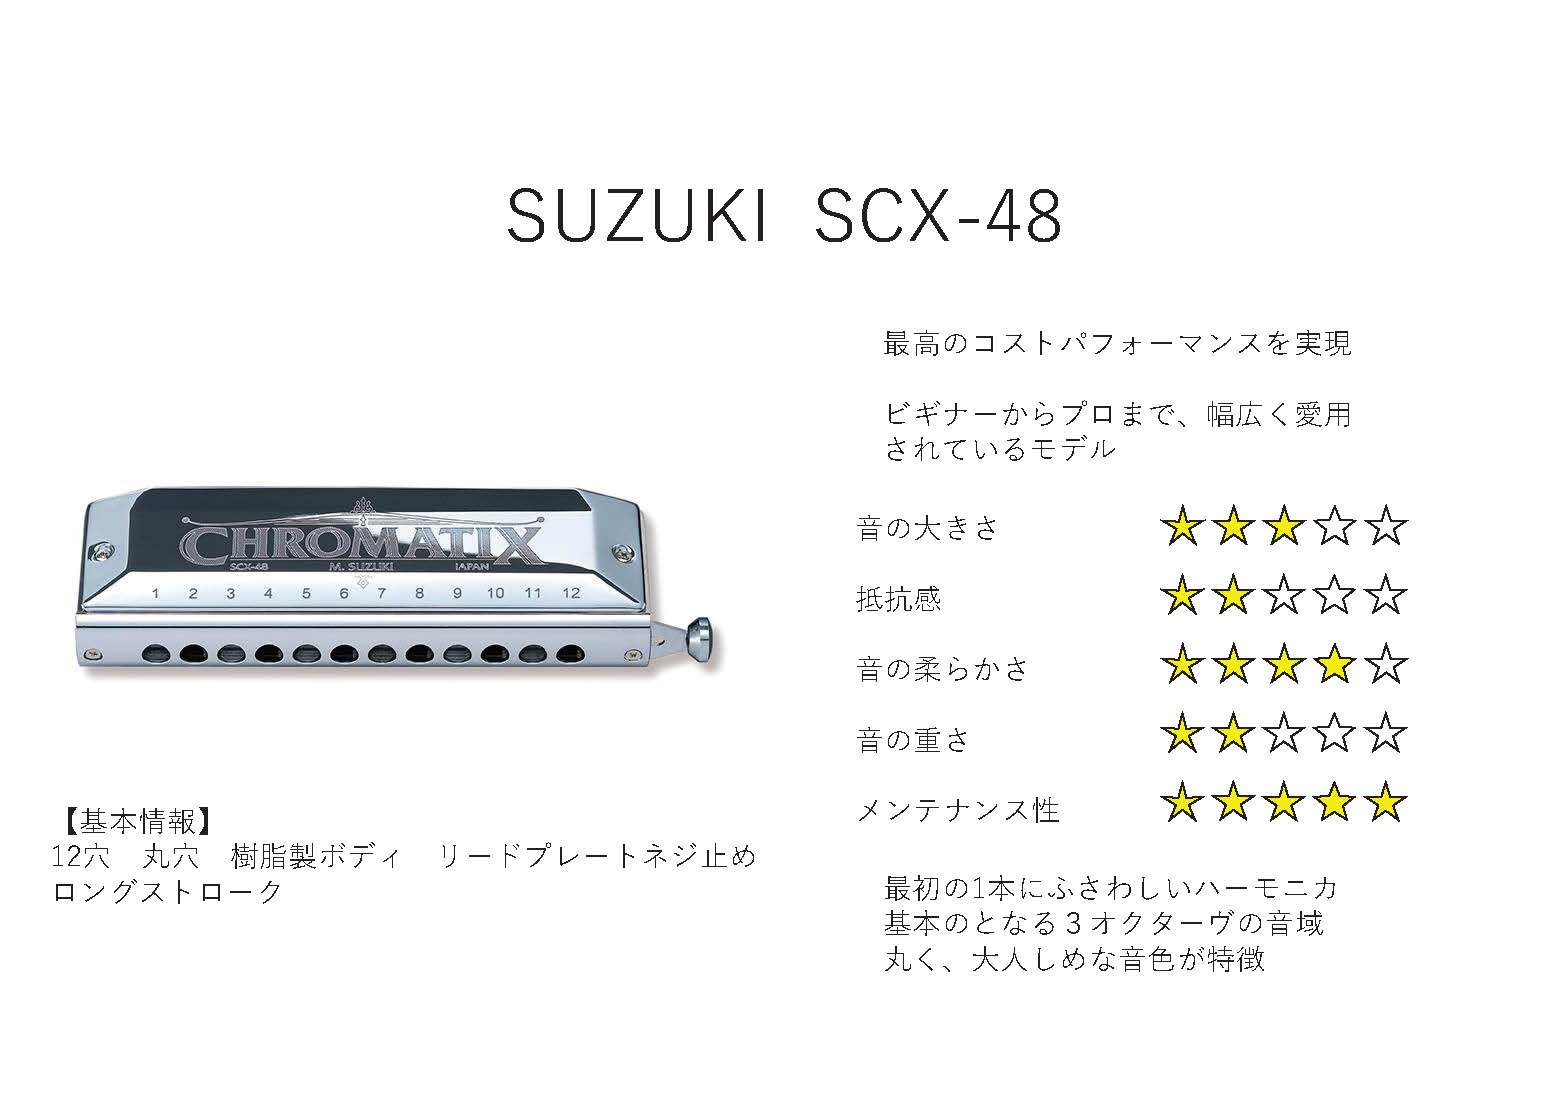 SUZUKI SCX-48 V2 【クロマチックハーモニカ】 / クロマチック 